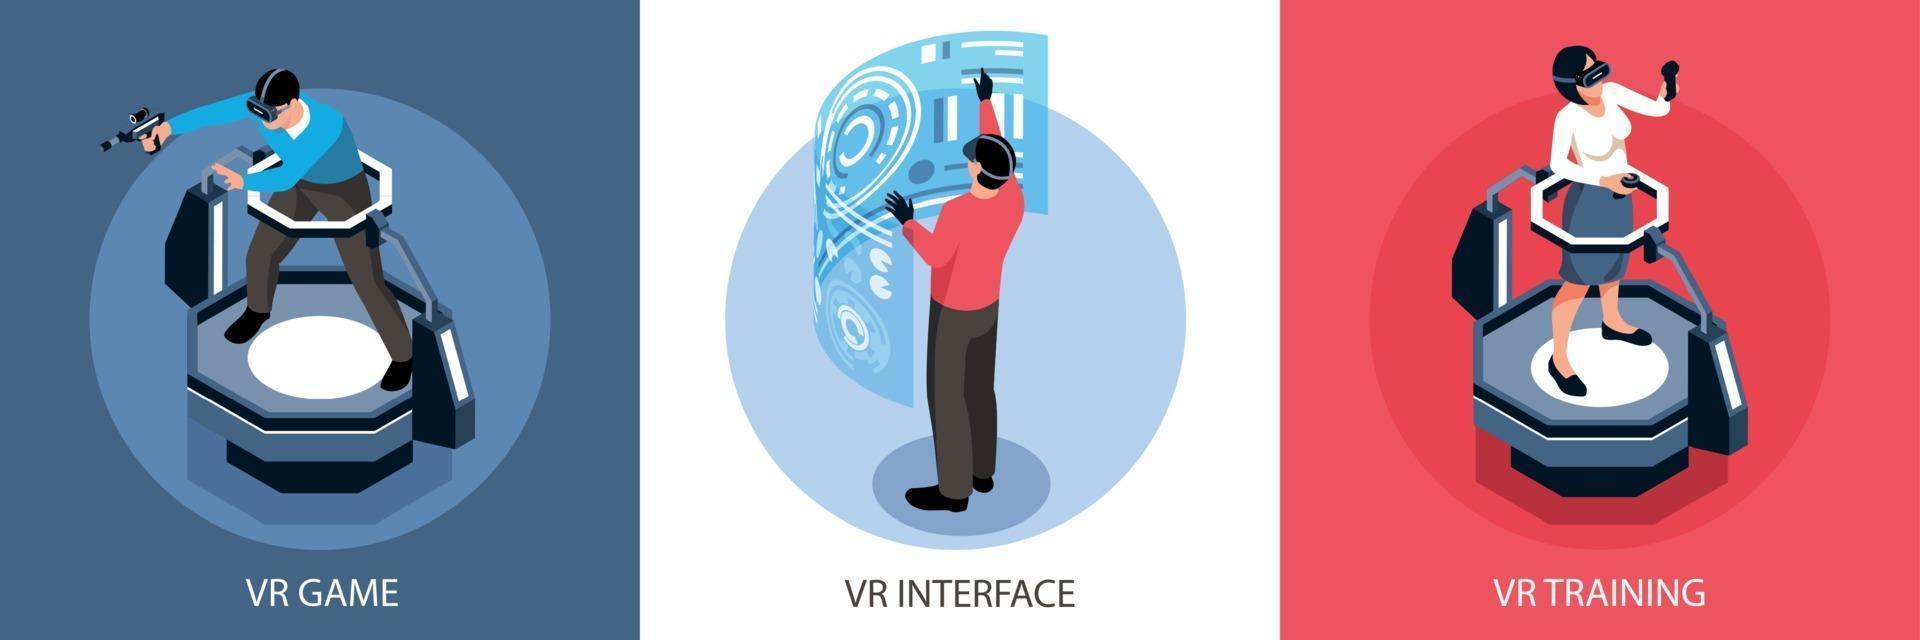 virtuell verklighet isometrisk designkoncept vektor